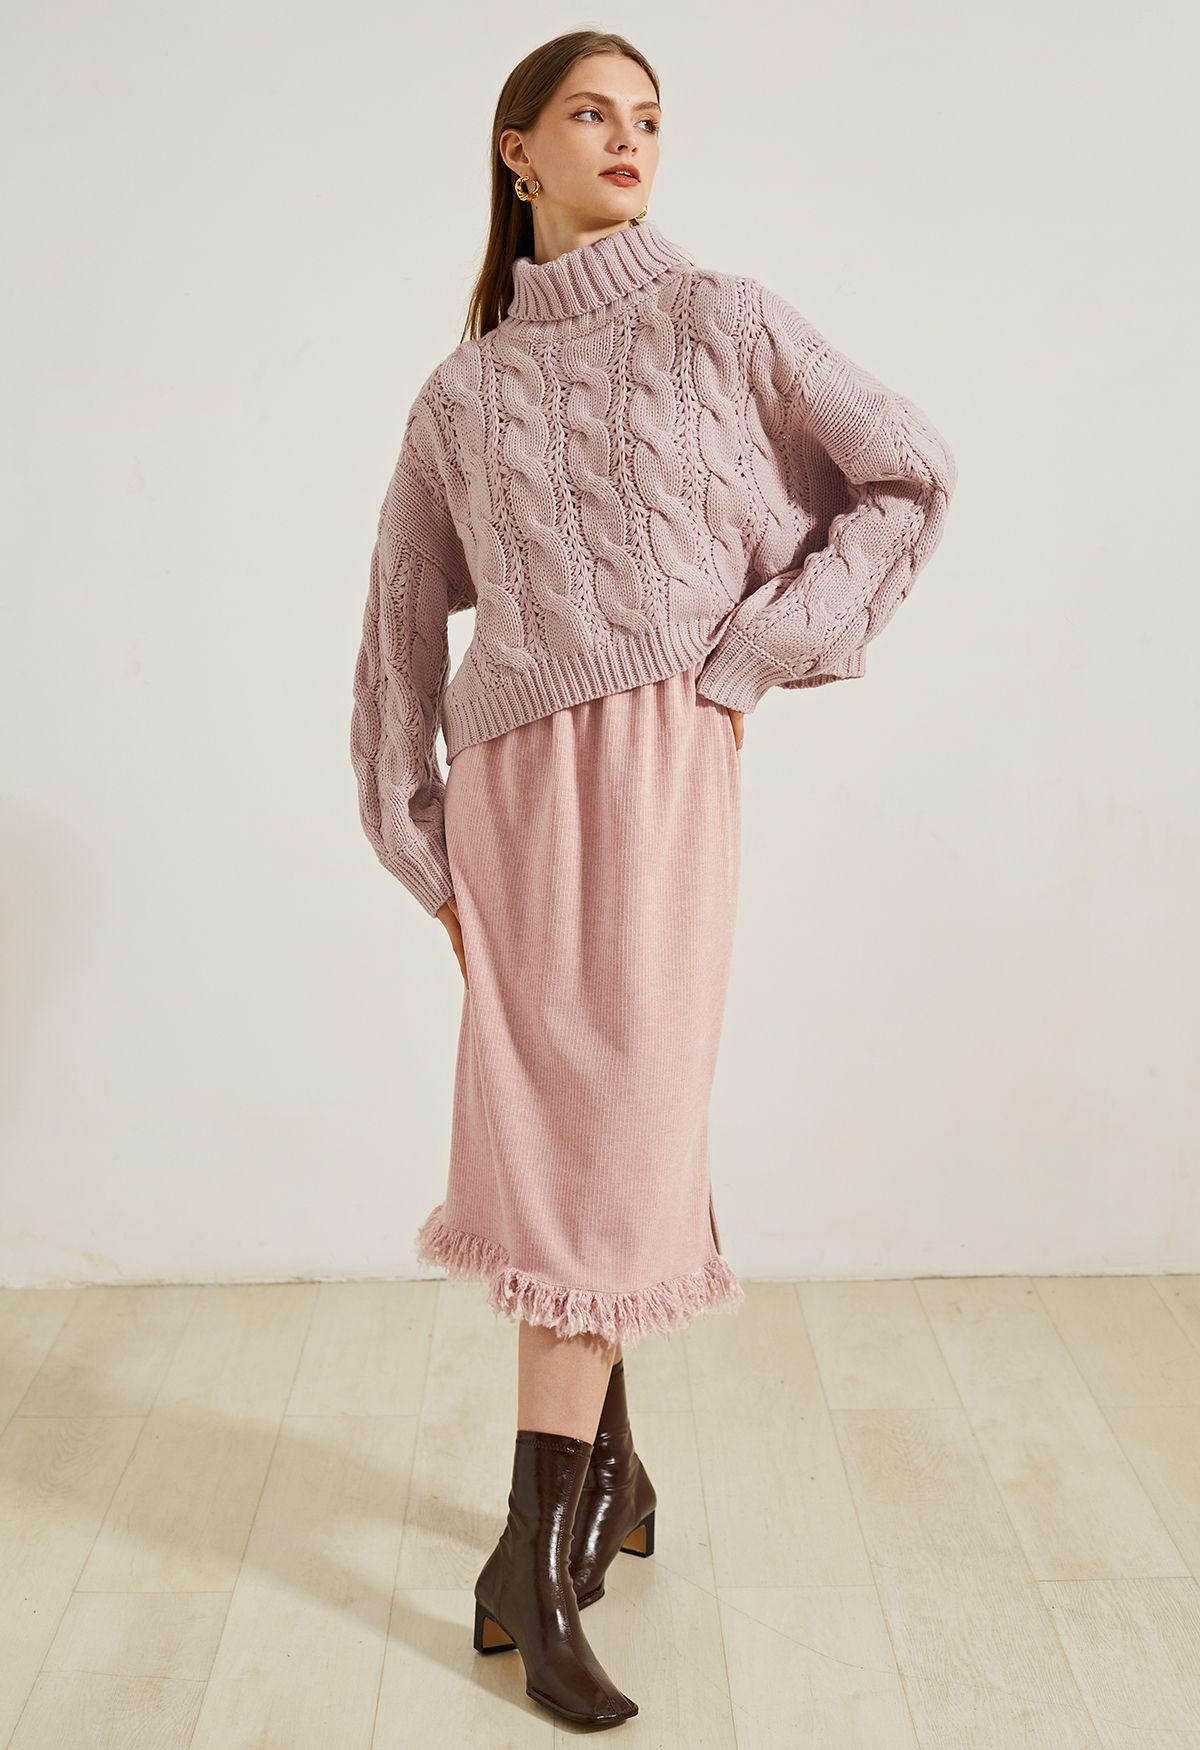 Maglione corto in maglia intrecciata a collo alto rosa